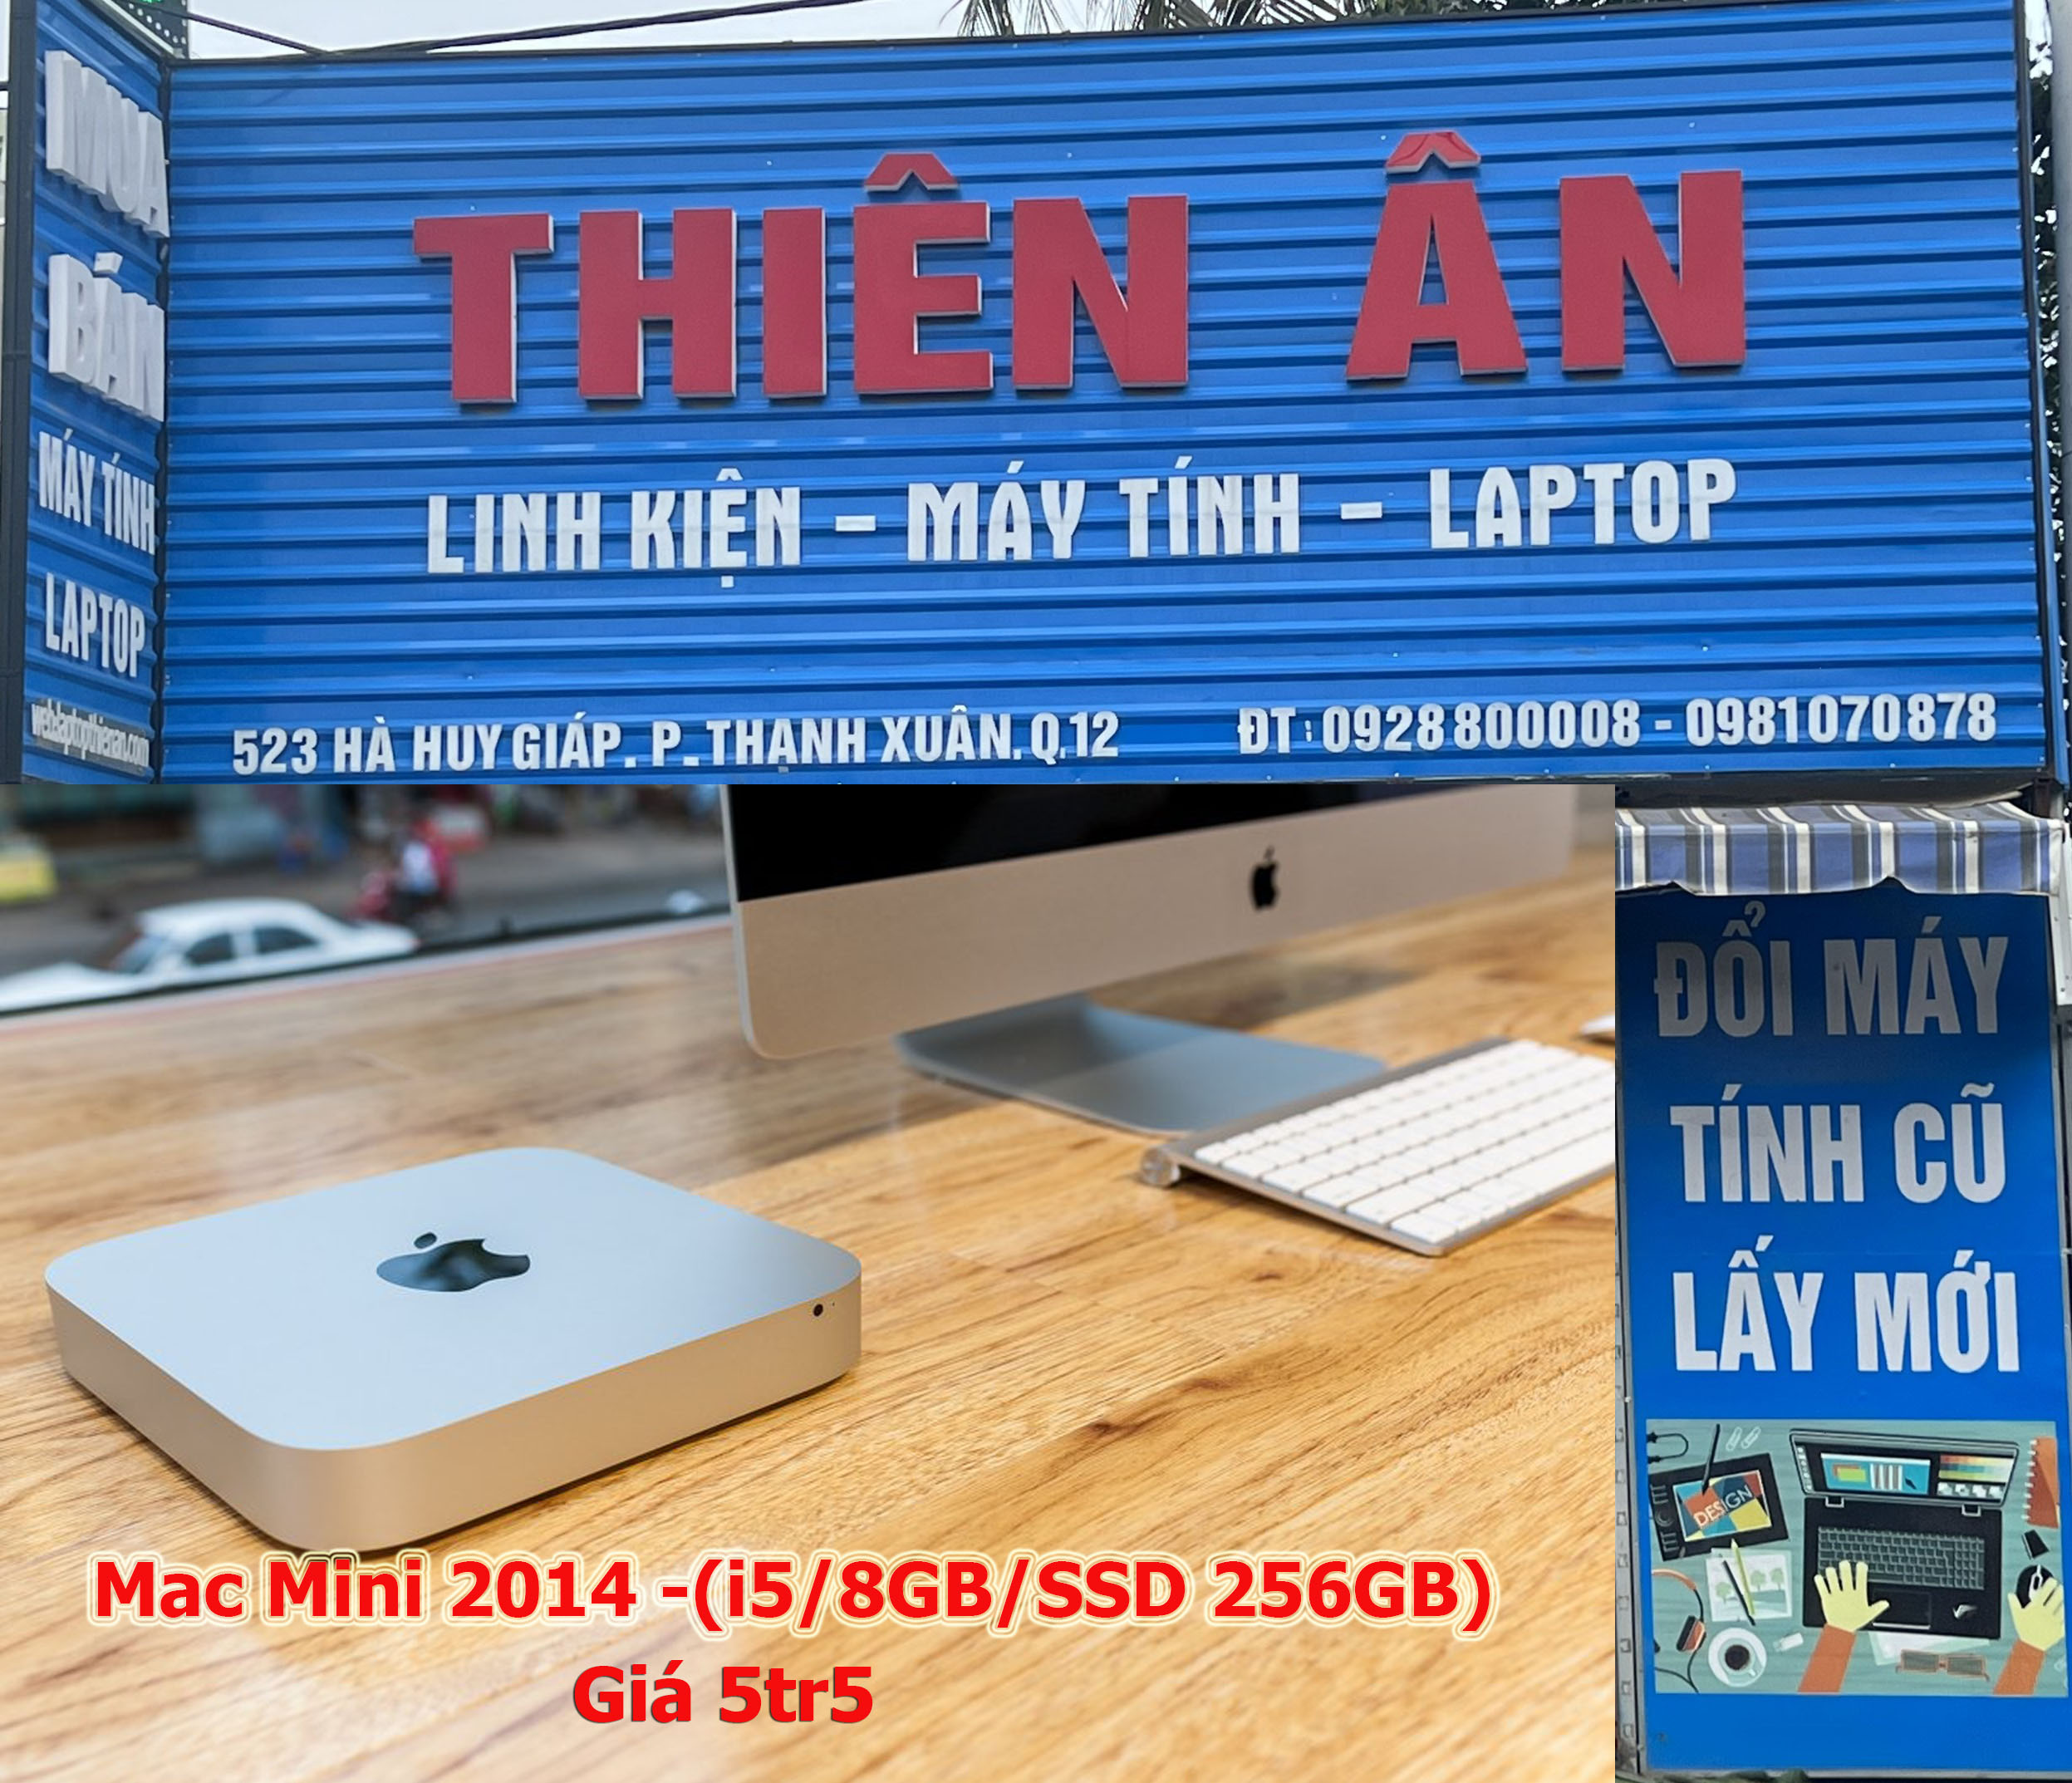 Mac Mini 2014  i5/8GB/SSD 256GB